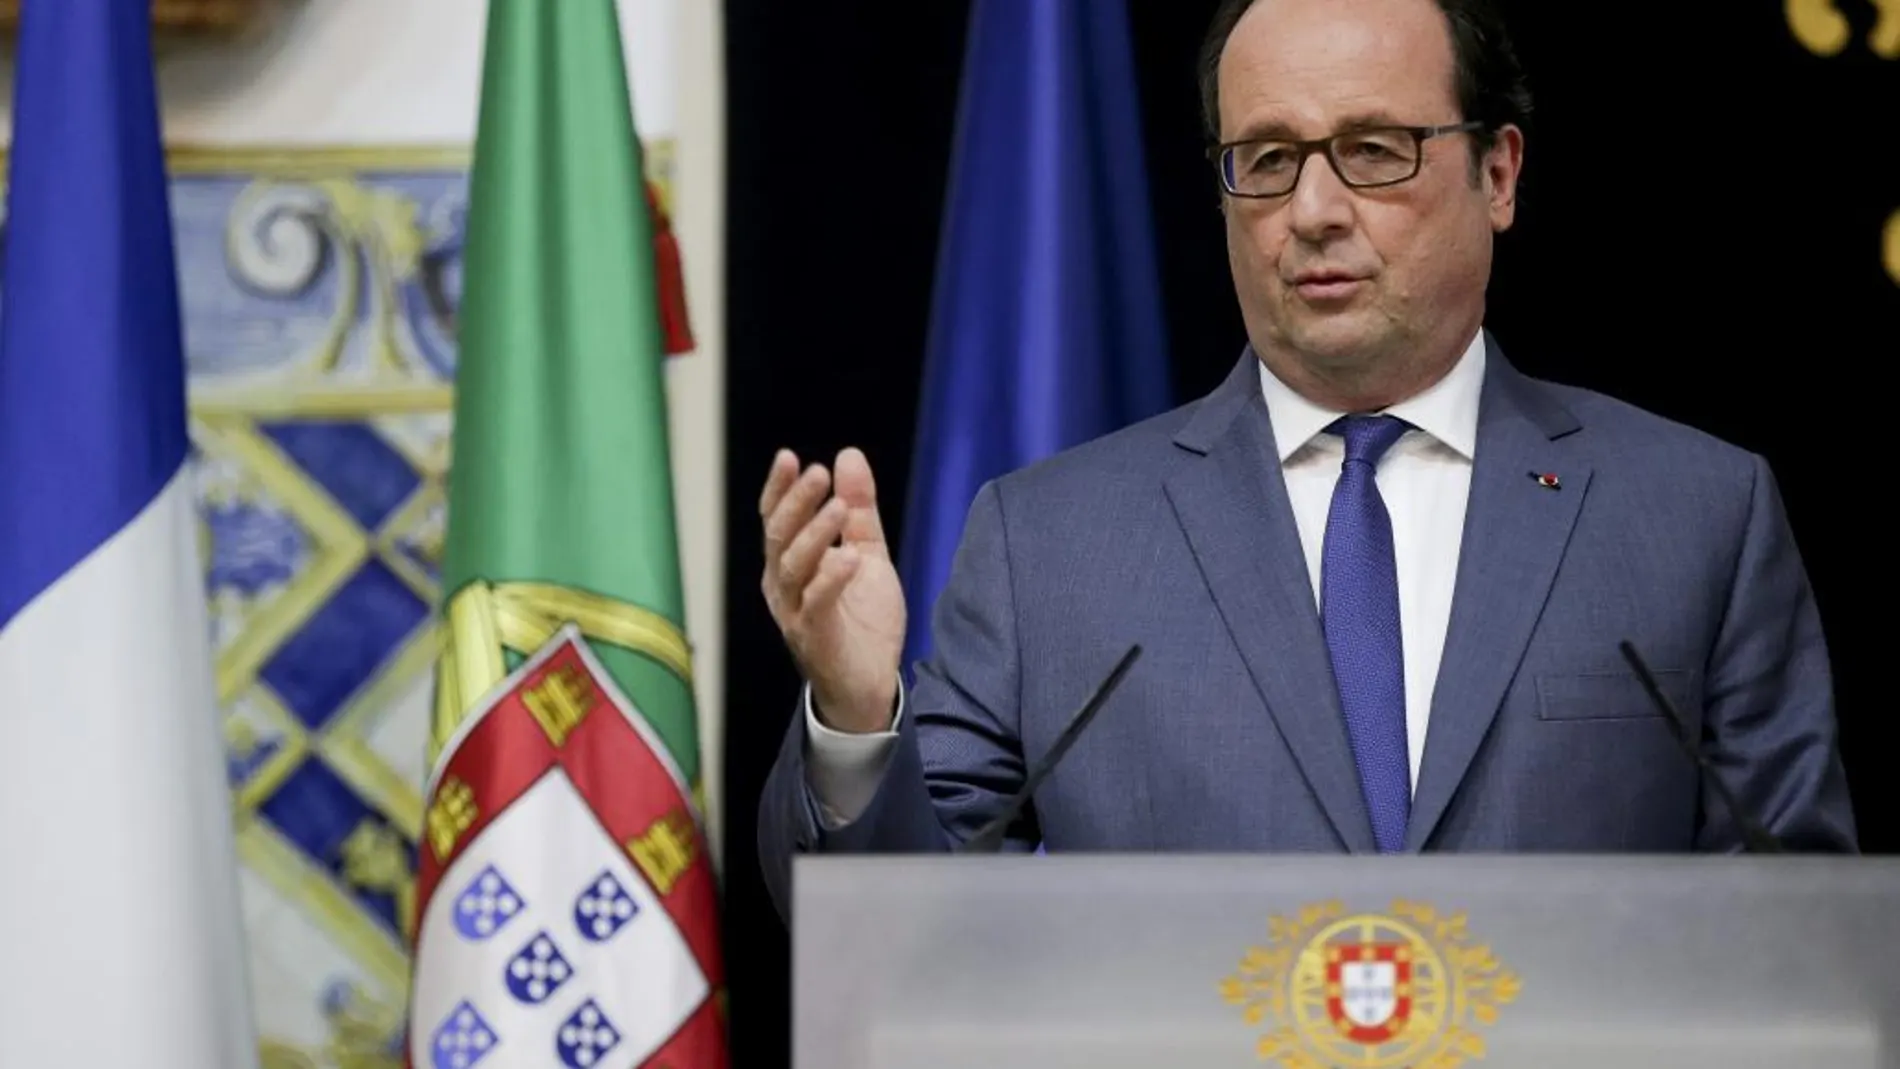 François Hollande ofrece una rueda de prensa durante su visita a Lisboa.